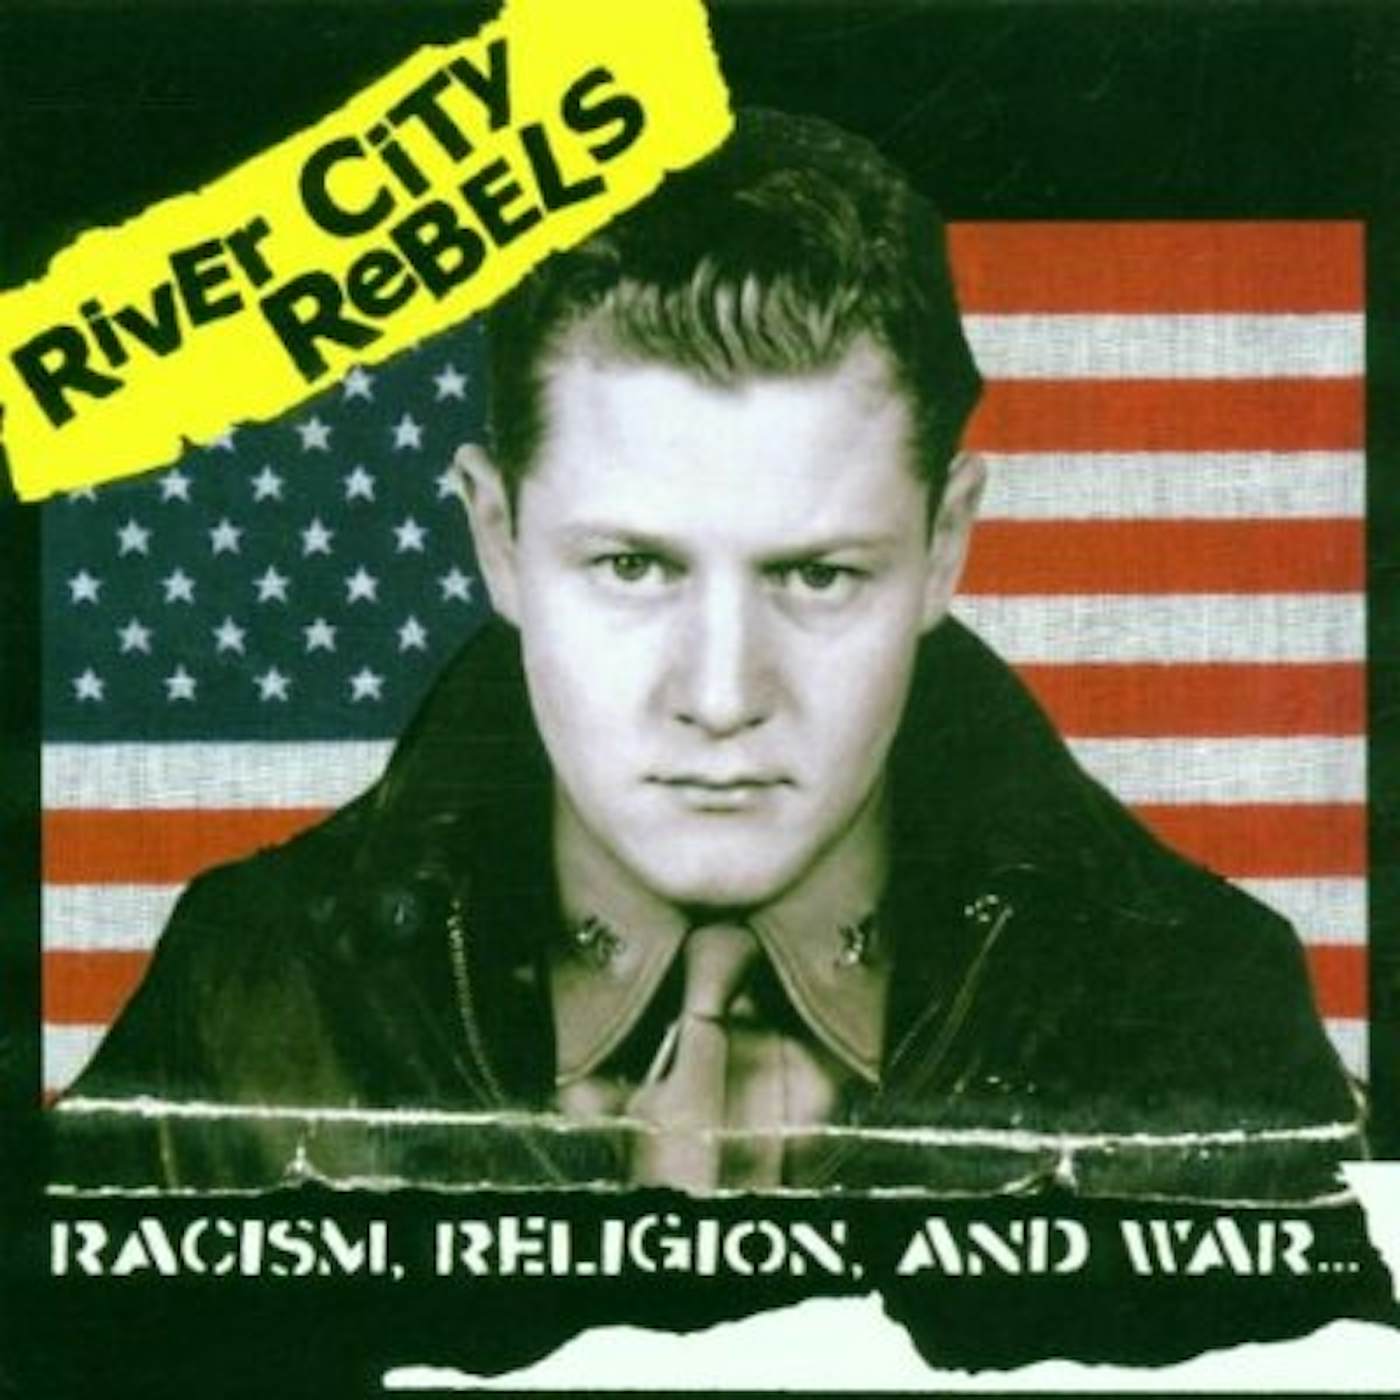 River City Rebels RACISM, RELIGION & WAR CD